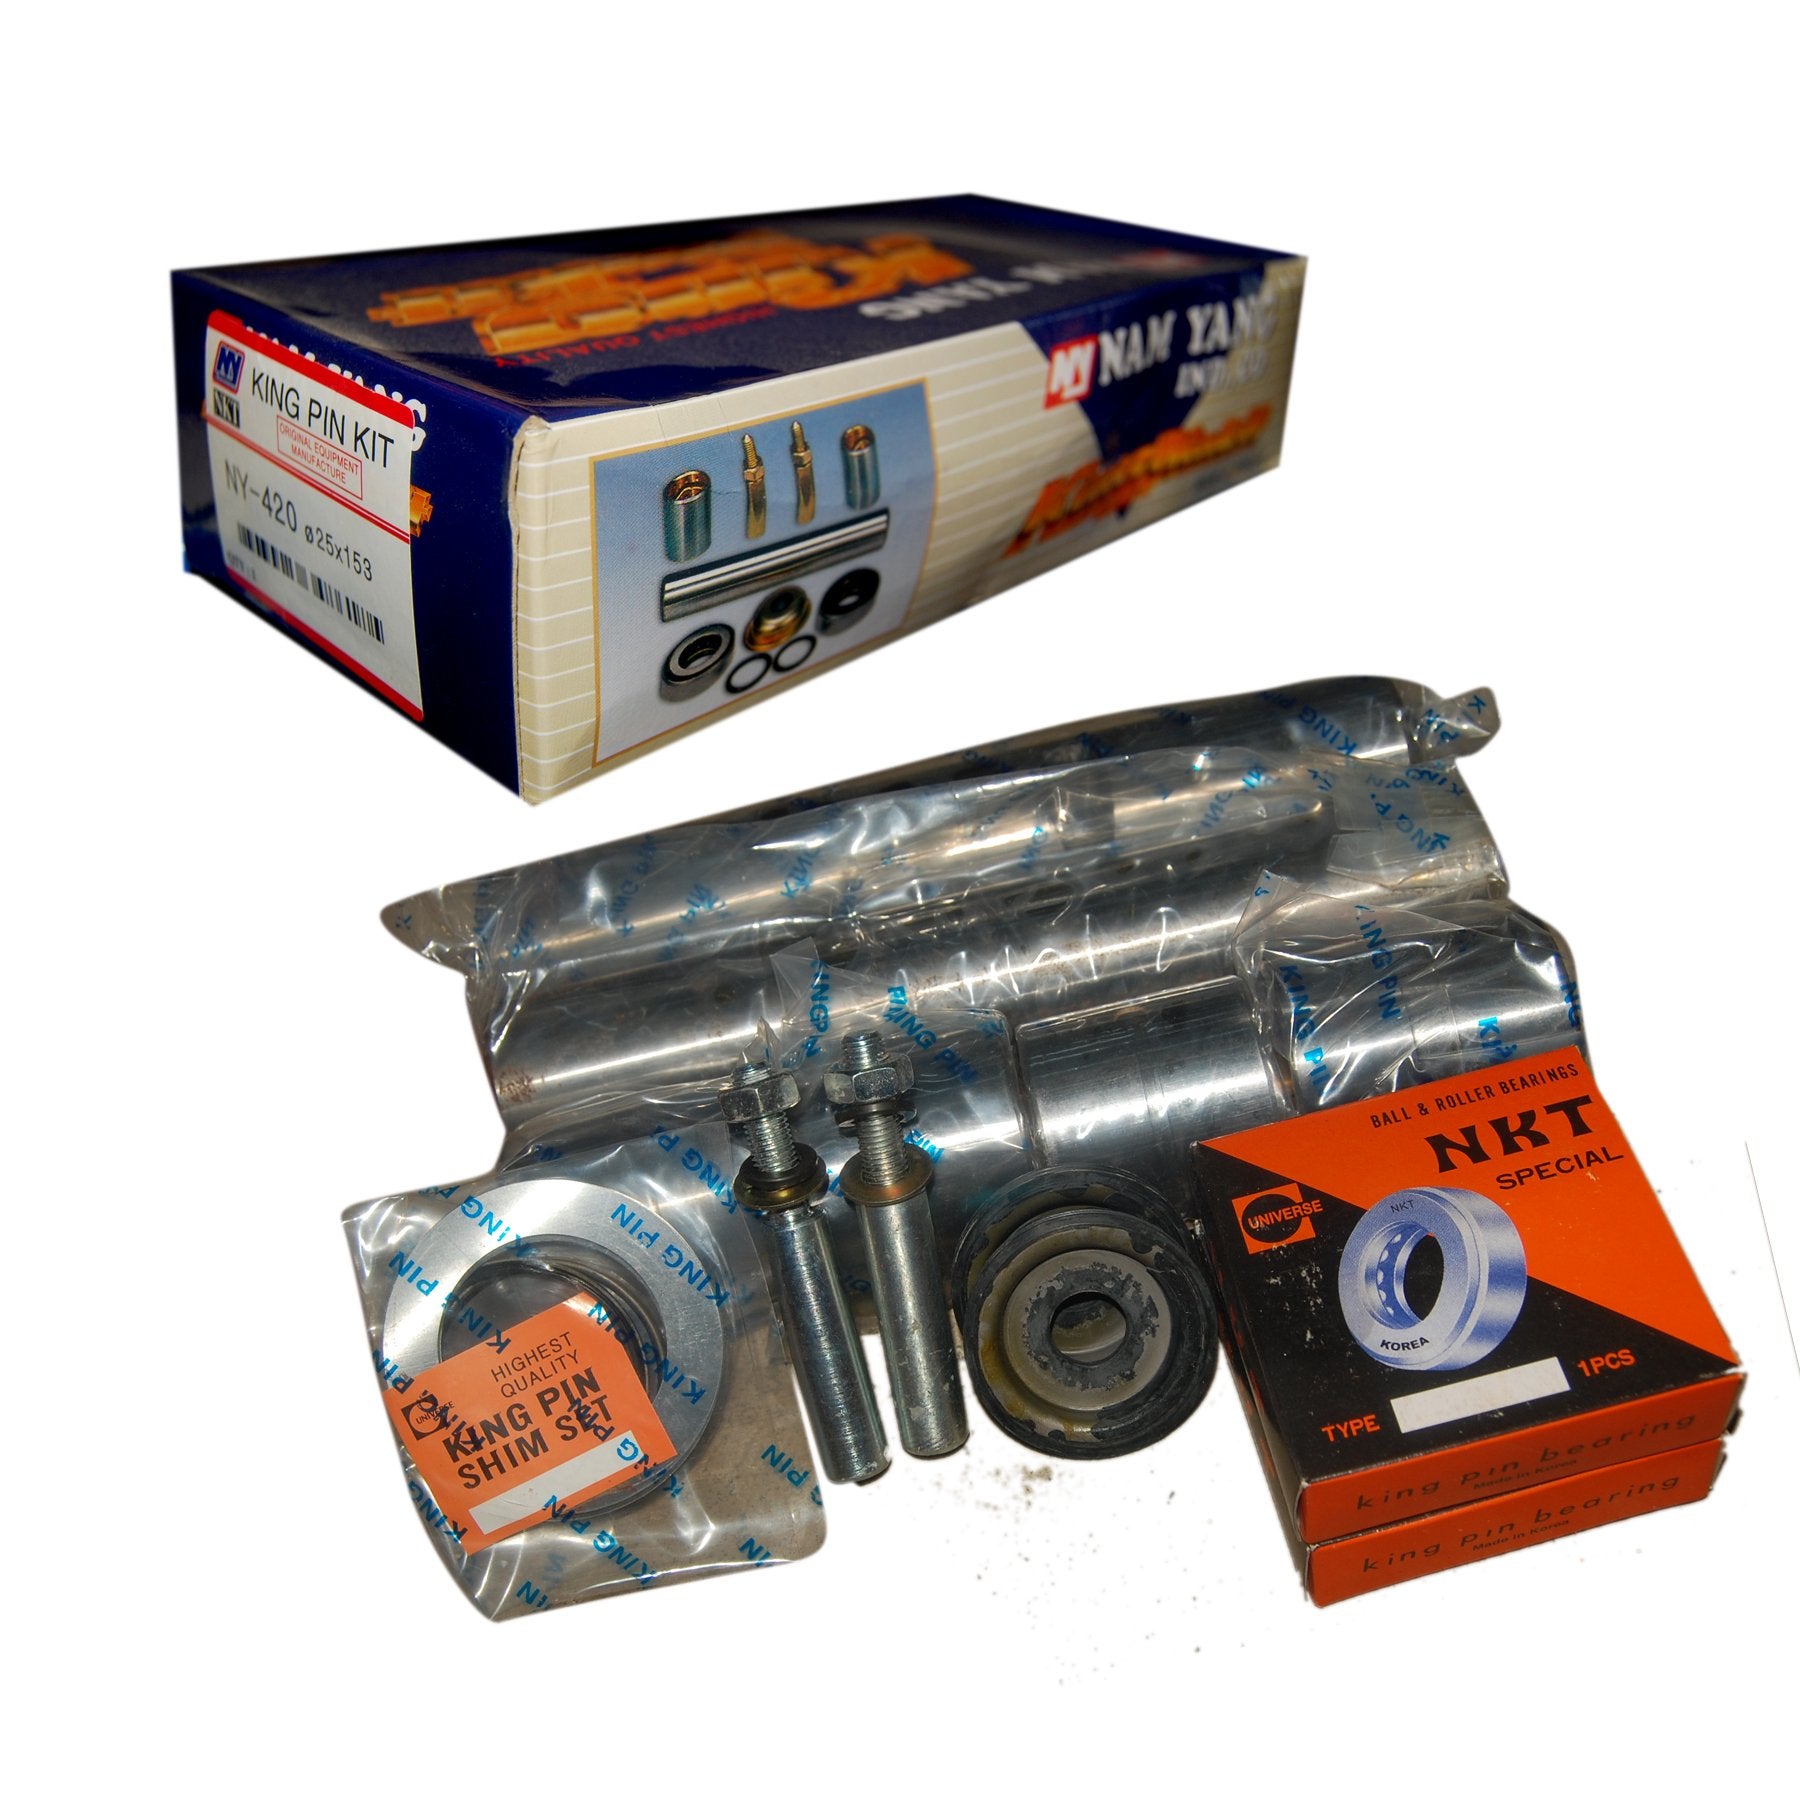 King Pin Kit, NAM YANG, 45x215.2, 11001-24101, NY-521(OLD) (001277) - Win Store